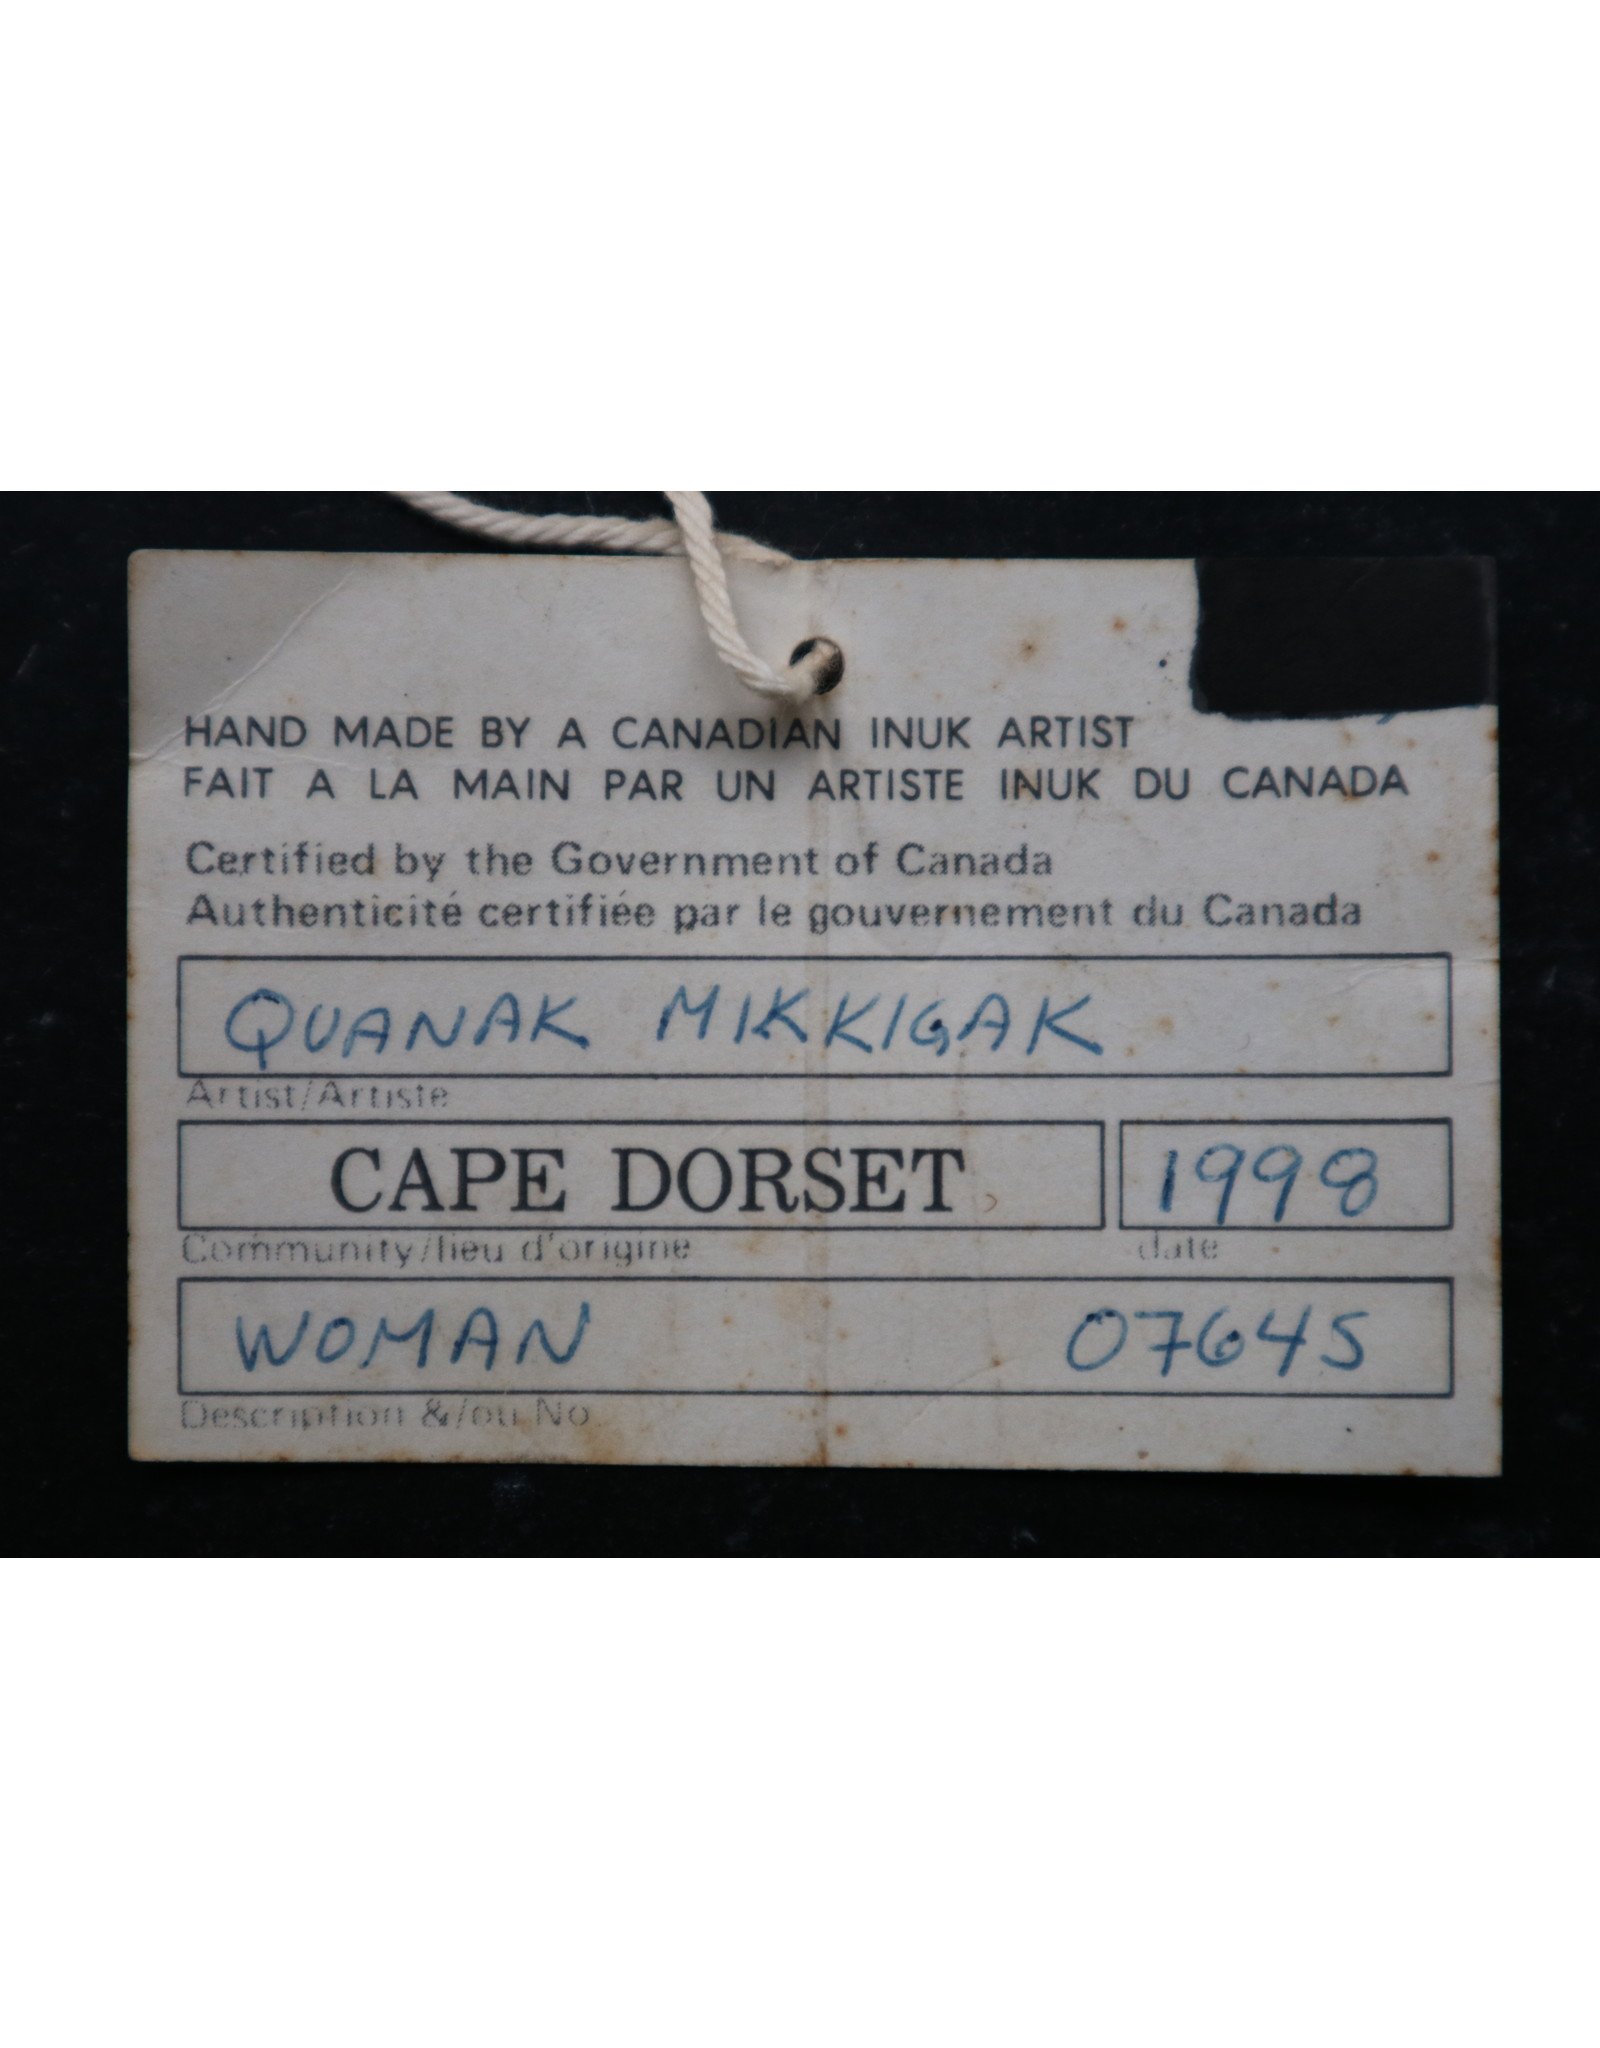 Cape Dorset Woman -Mikkigak